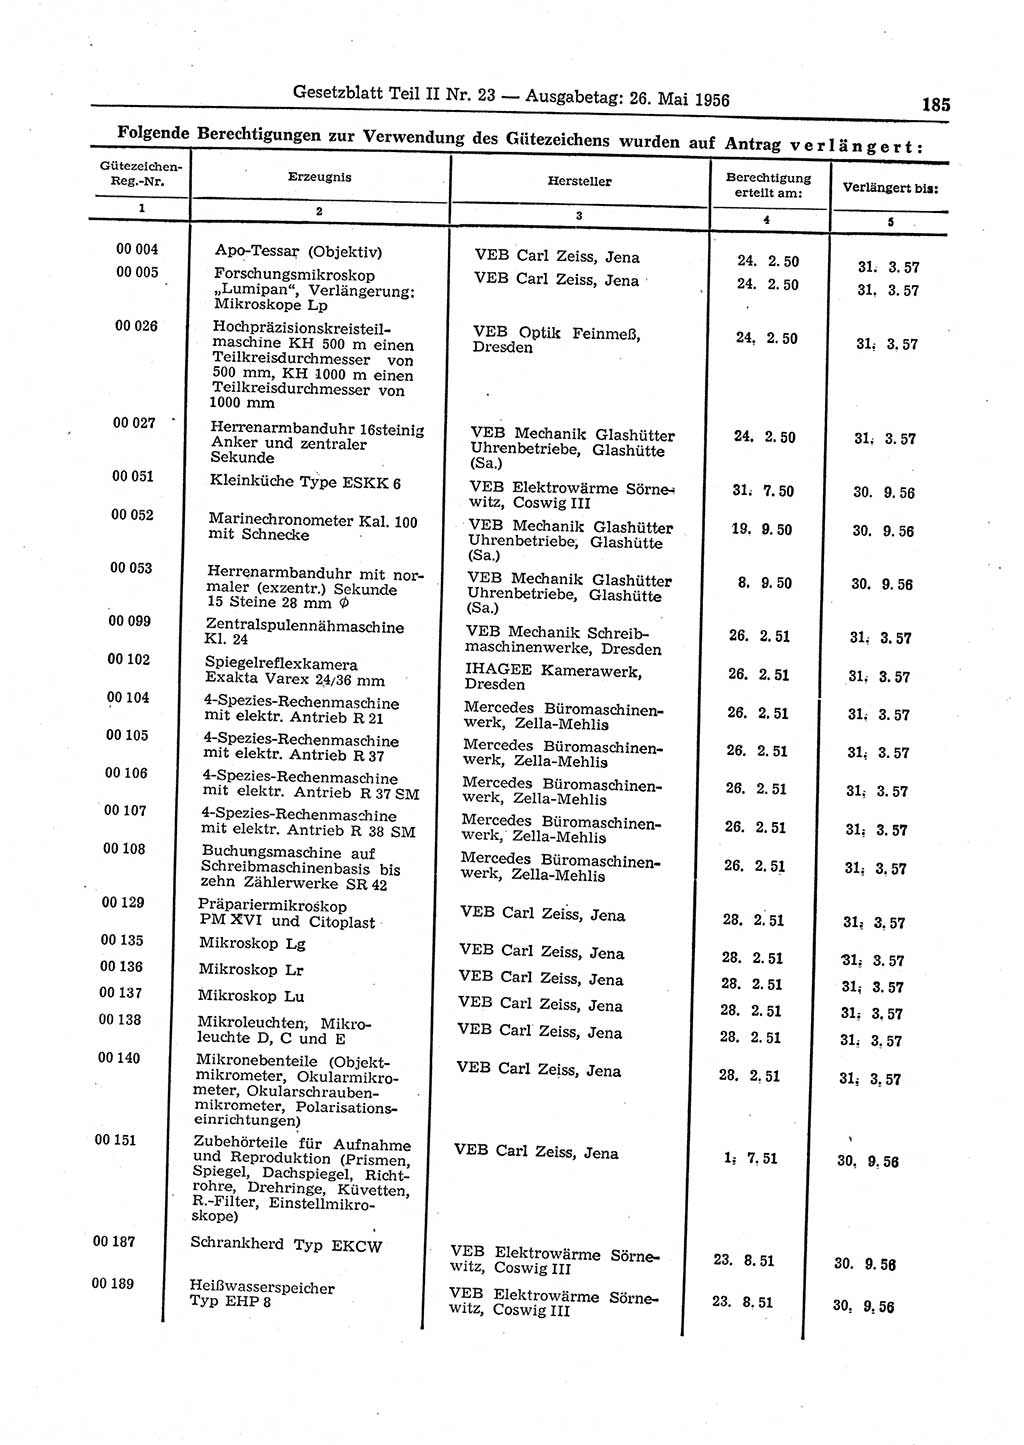 Gesetzblatt (GBl.) der Deutschen Demokratischen Republik (DDR) Teil ⅠⅠ 1956, Seite 185 (GBl. DDR ⅠⅠ 1956, S. 185)